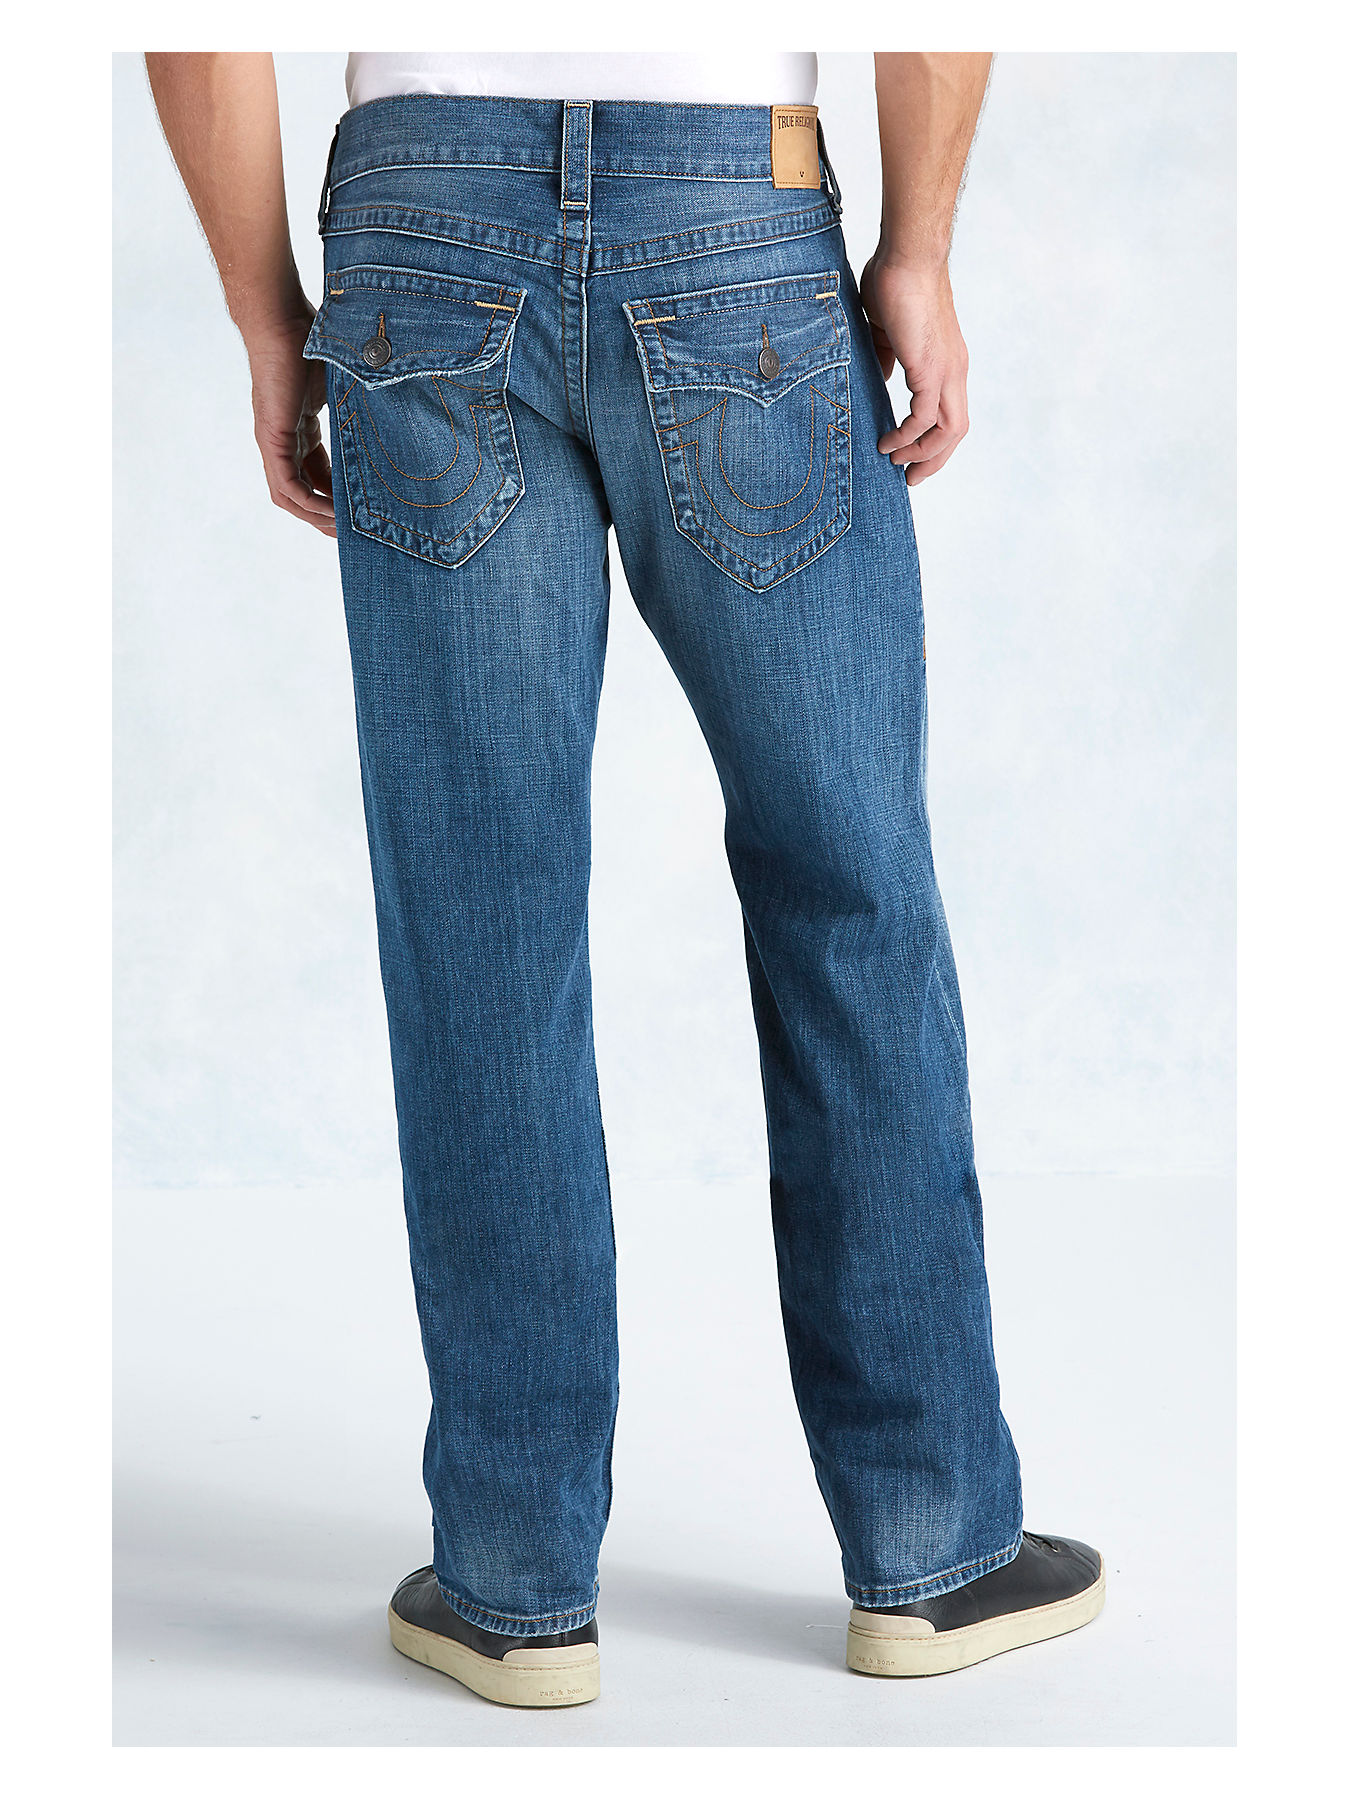 Ricky Men's Jean - Straight Leg Jeans for Men | True Religion